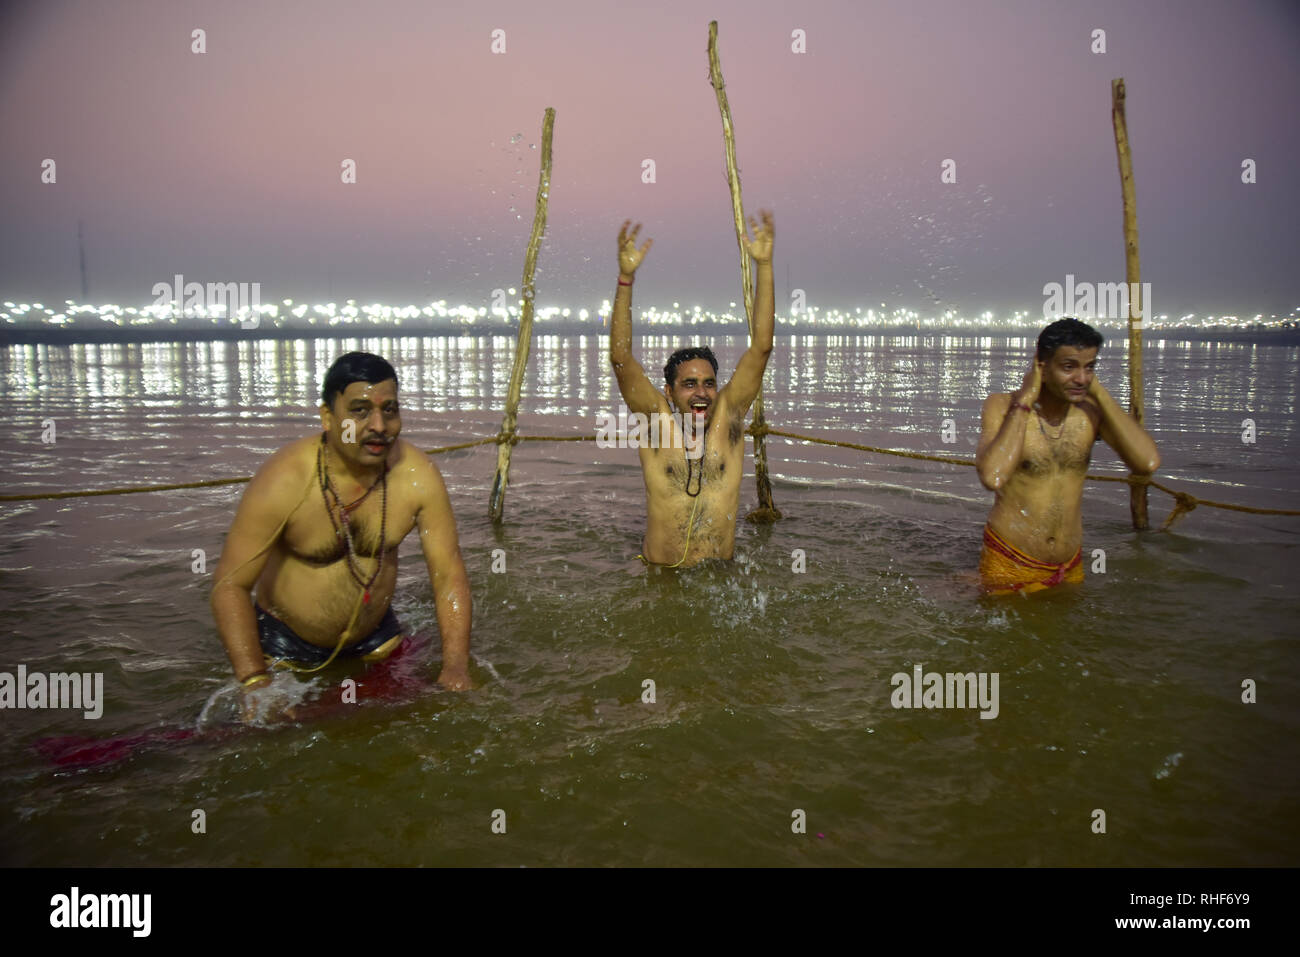 Pilger gesehen ein heiliges Bad während der Wallfahrt. Kumbh Mela, einer der größten Gemeinde des Menschen auf der Erde. Lacs von Menschen werden erwartet am Tag der zweiten Shahi Snan am 4. Februar und Arrangements sind entsprechend in Prayagraj gemacht. Stockfoto